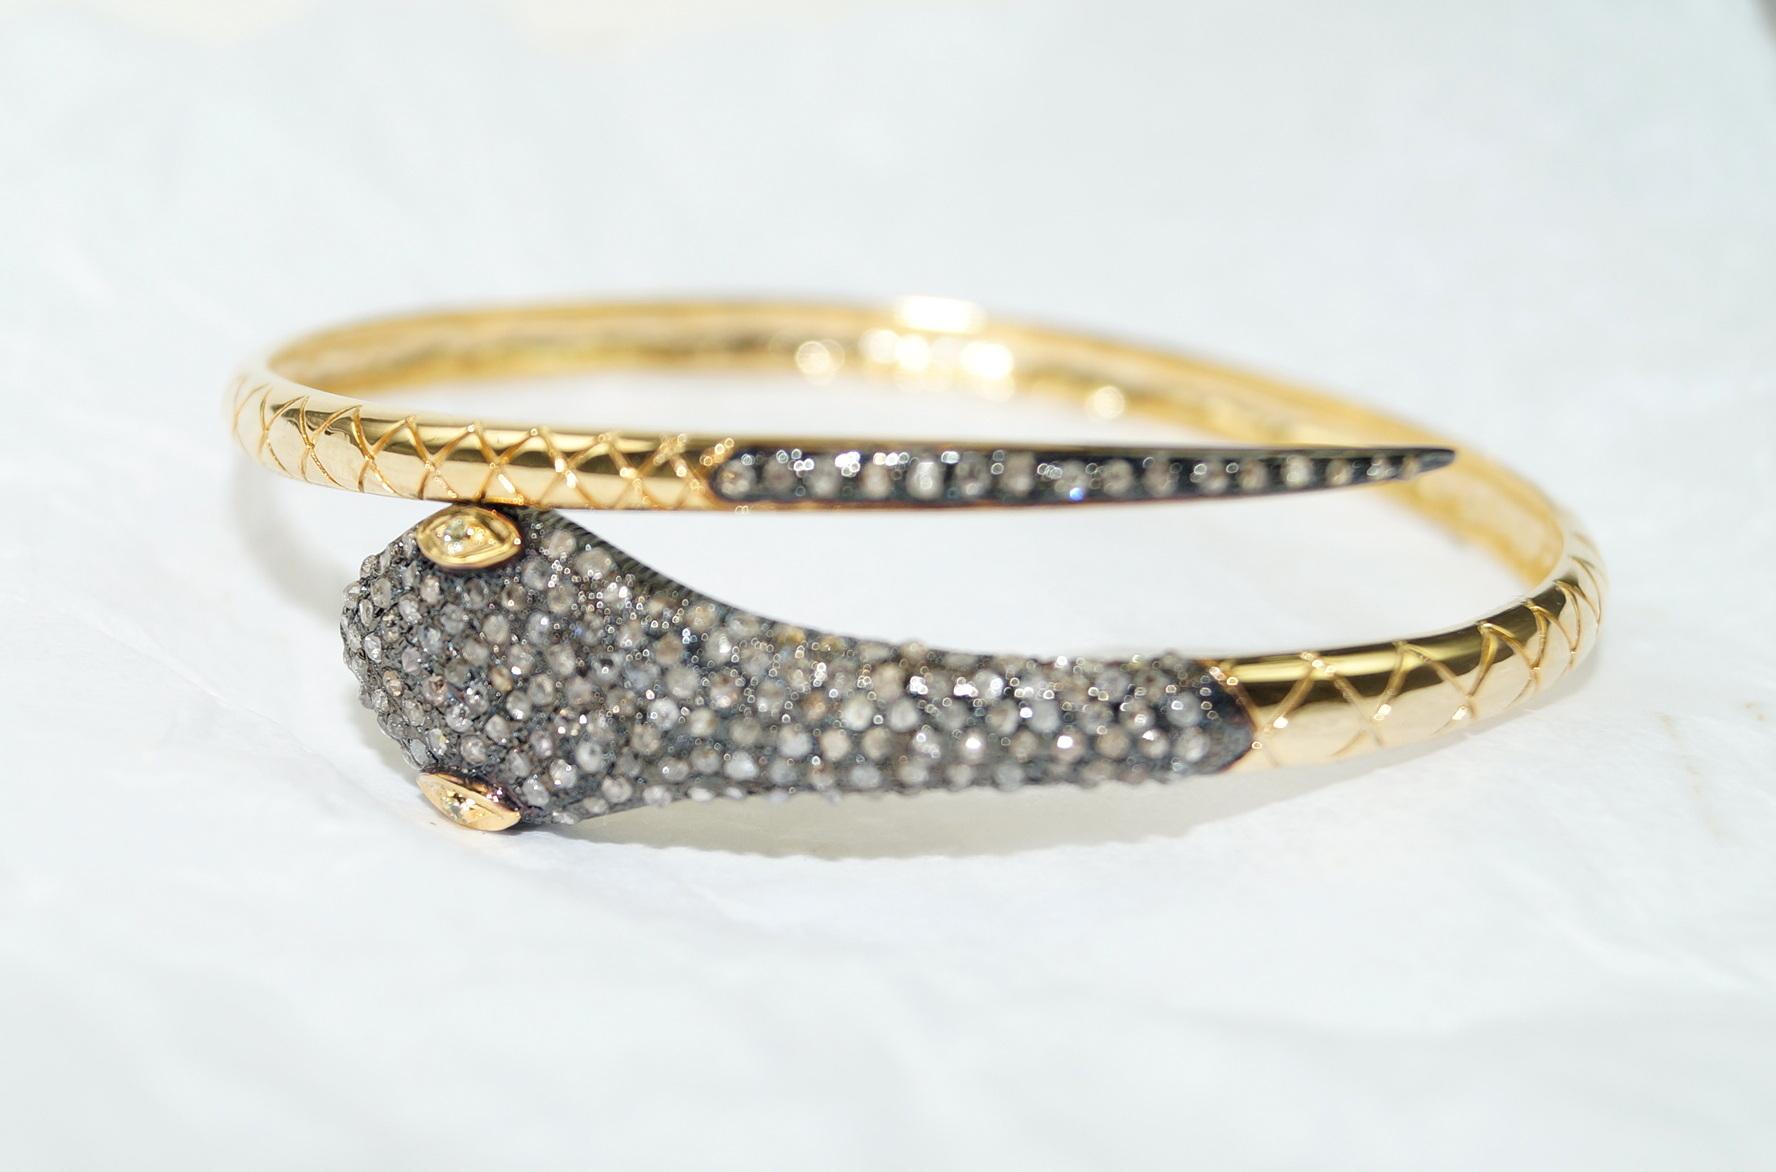 Ce bracelet serpent en or est un accessoire polyvalent et captivant qui peut ajouter une touche d'élégance, de mystère et d'individualité à votre style. Ce bracelet en or et diamants est composé de :

Diamant - 2,88cts
Type de diamant : Diamants